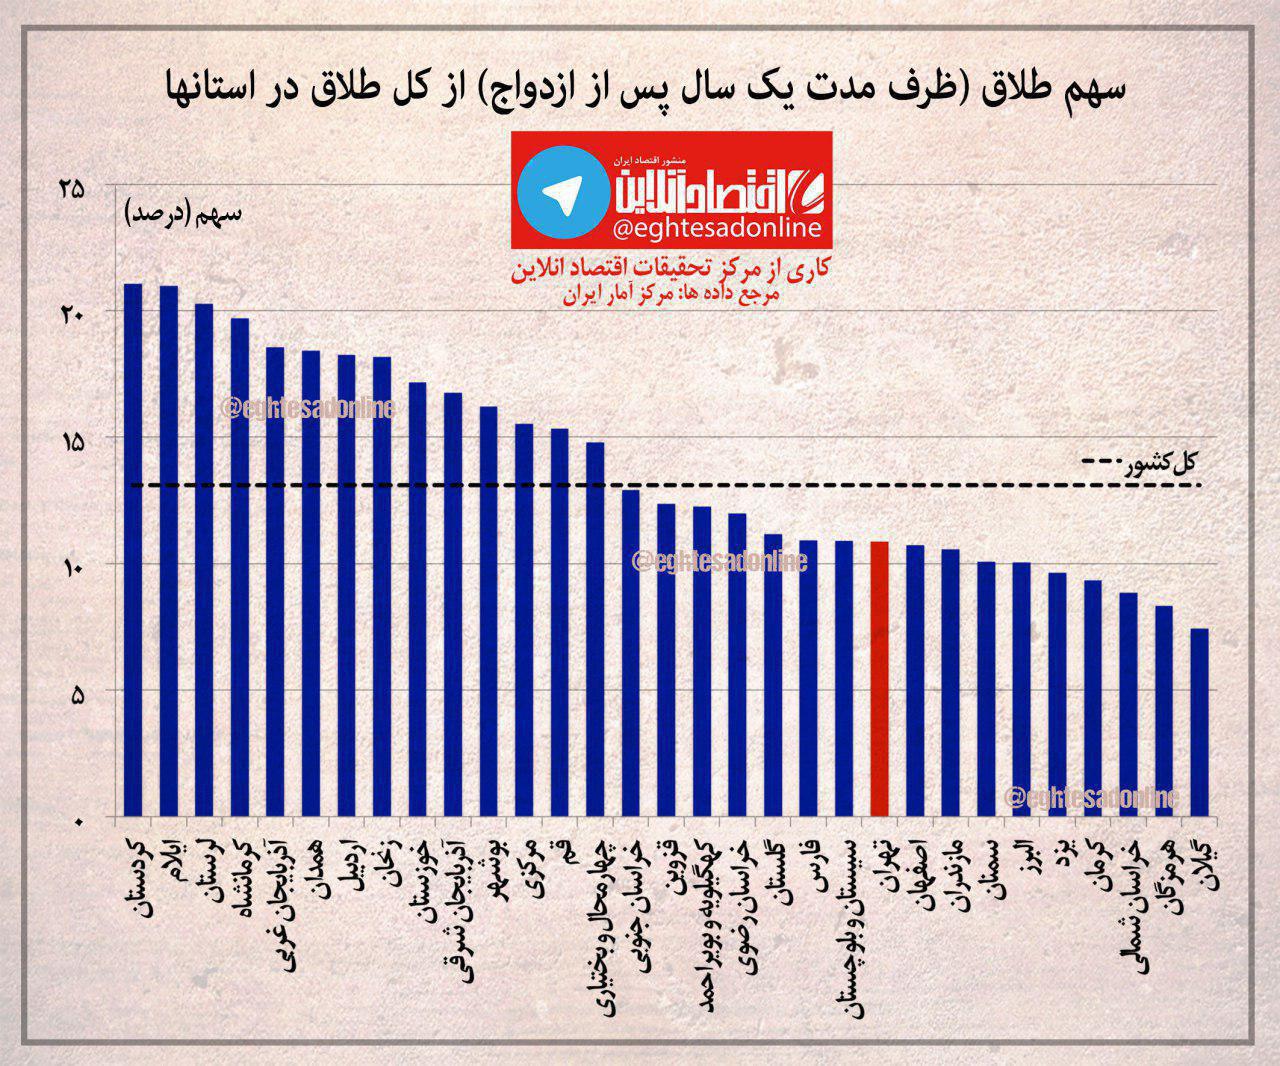 بیشترین و کمترین آمار طلاق در کدام استان است؟ +نمودار